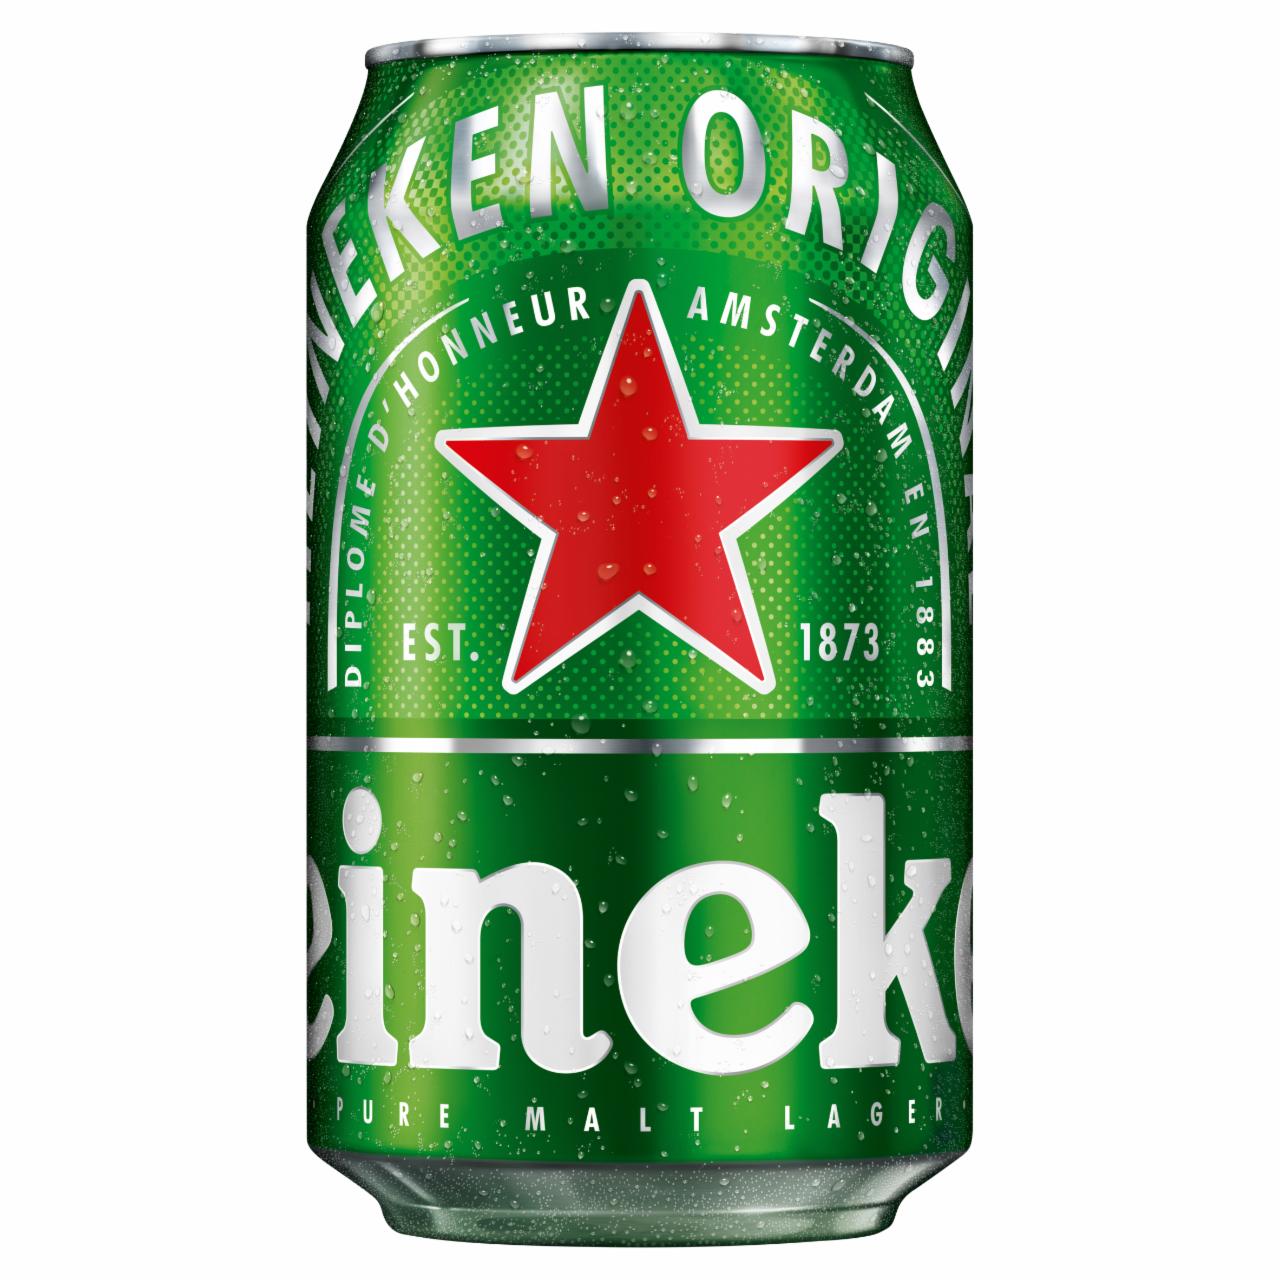 Képek - Heineken minőségi világos sör 5% 0,33 l doboz